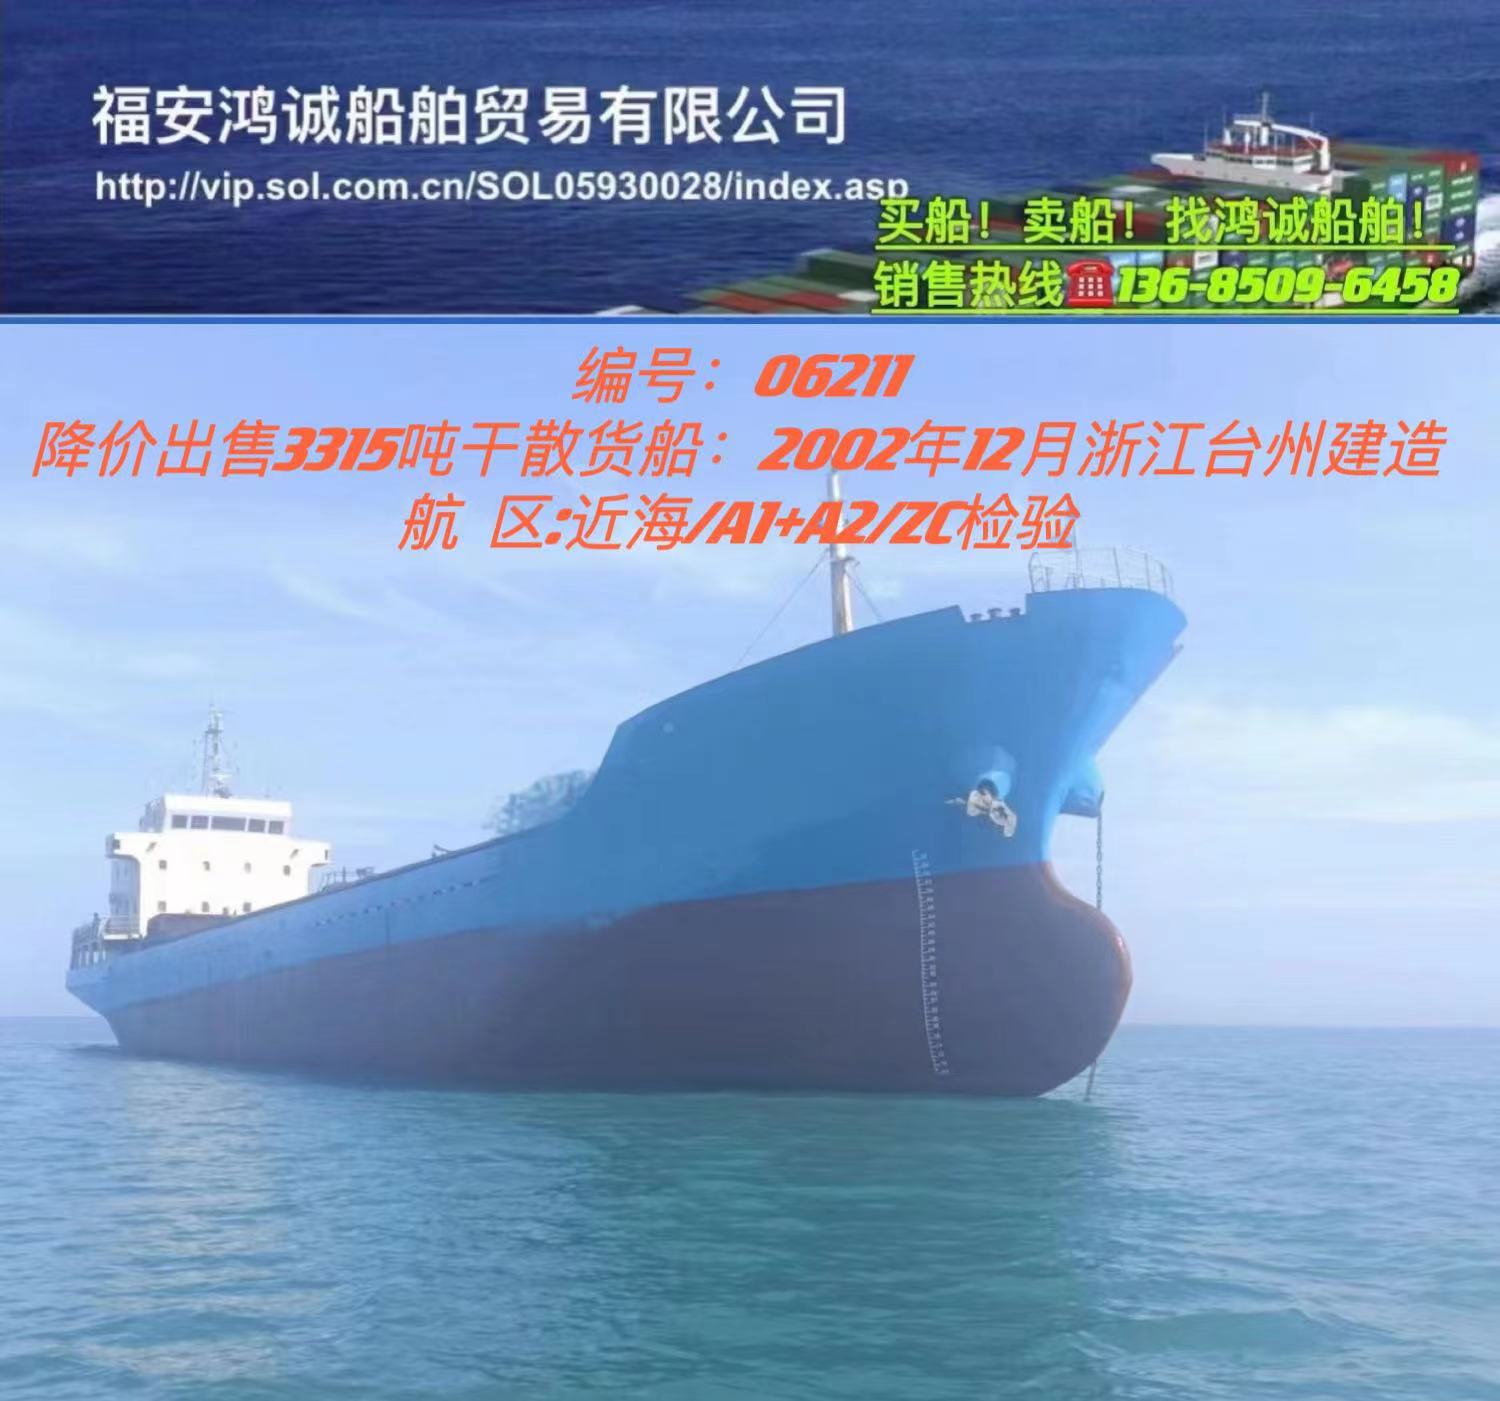 降价出售3315吨干散货船： 2002年12月浙江台州建造/